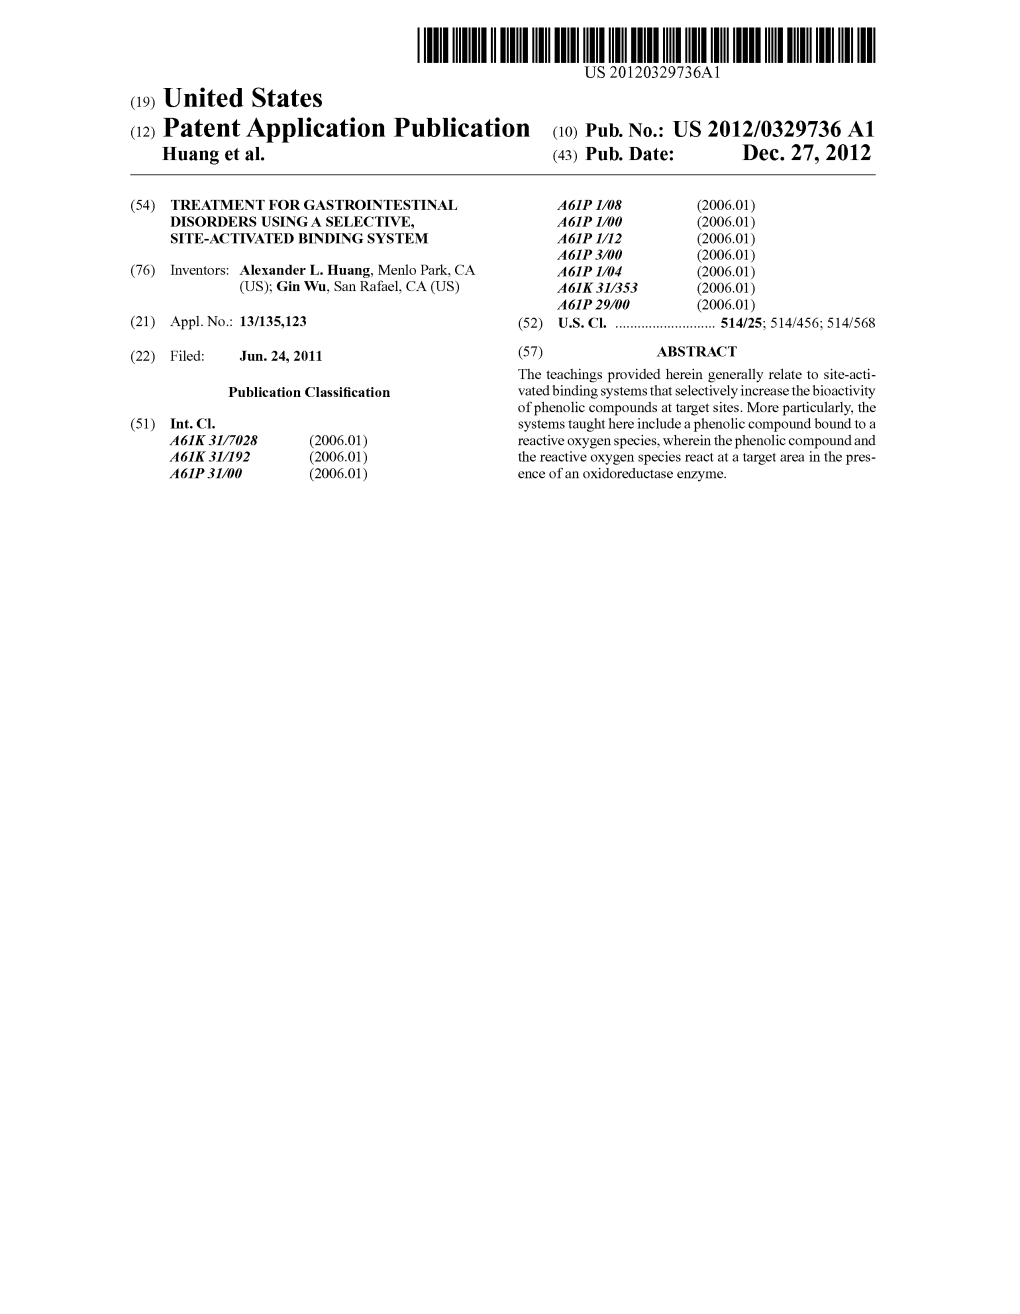 (12) Patent Application Publication (10) Pub. No.: US 2012/0329736A1 Huang Et Al